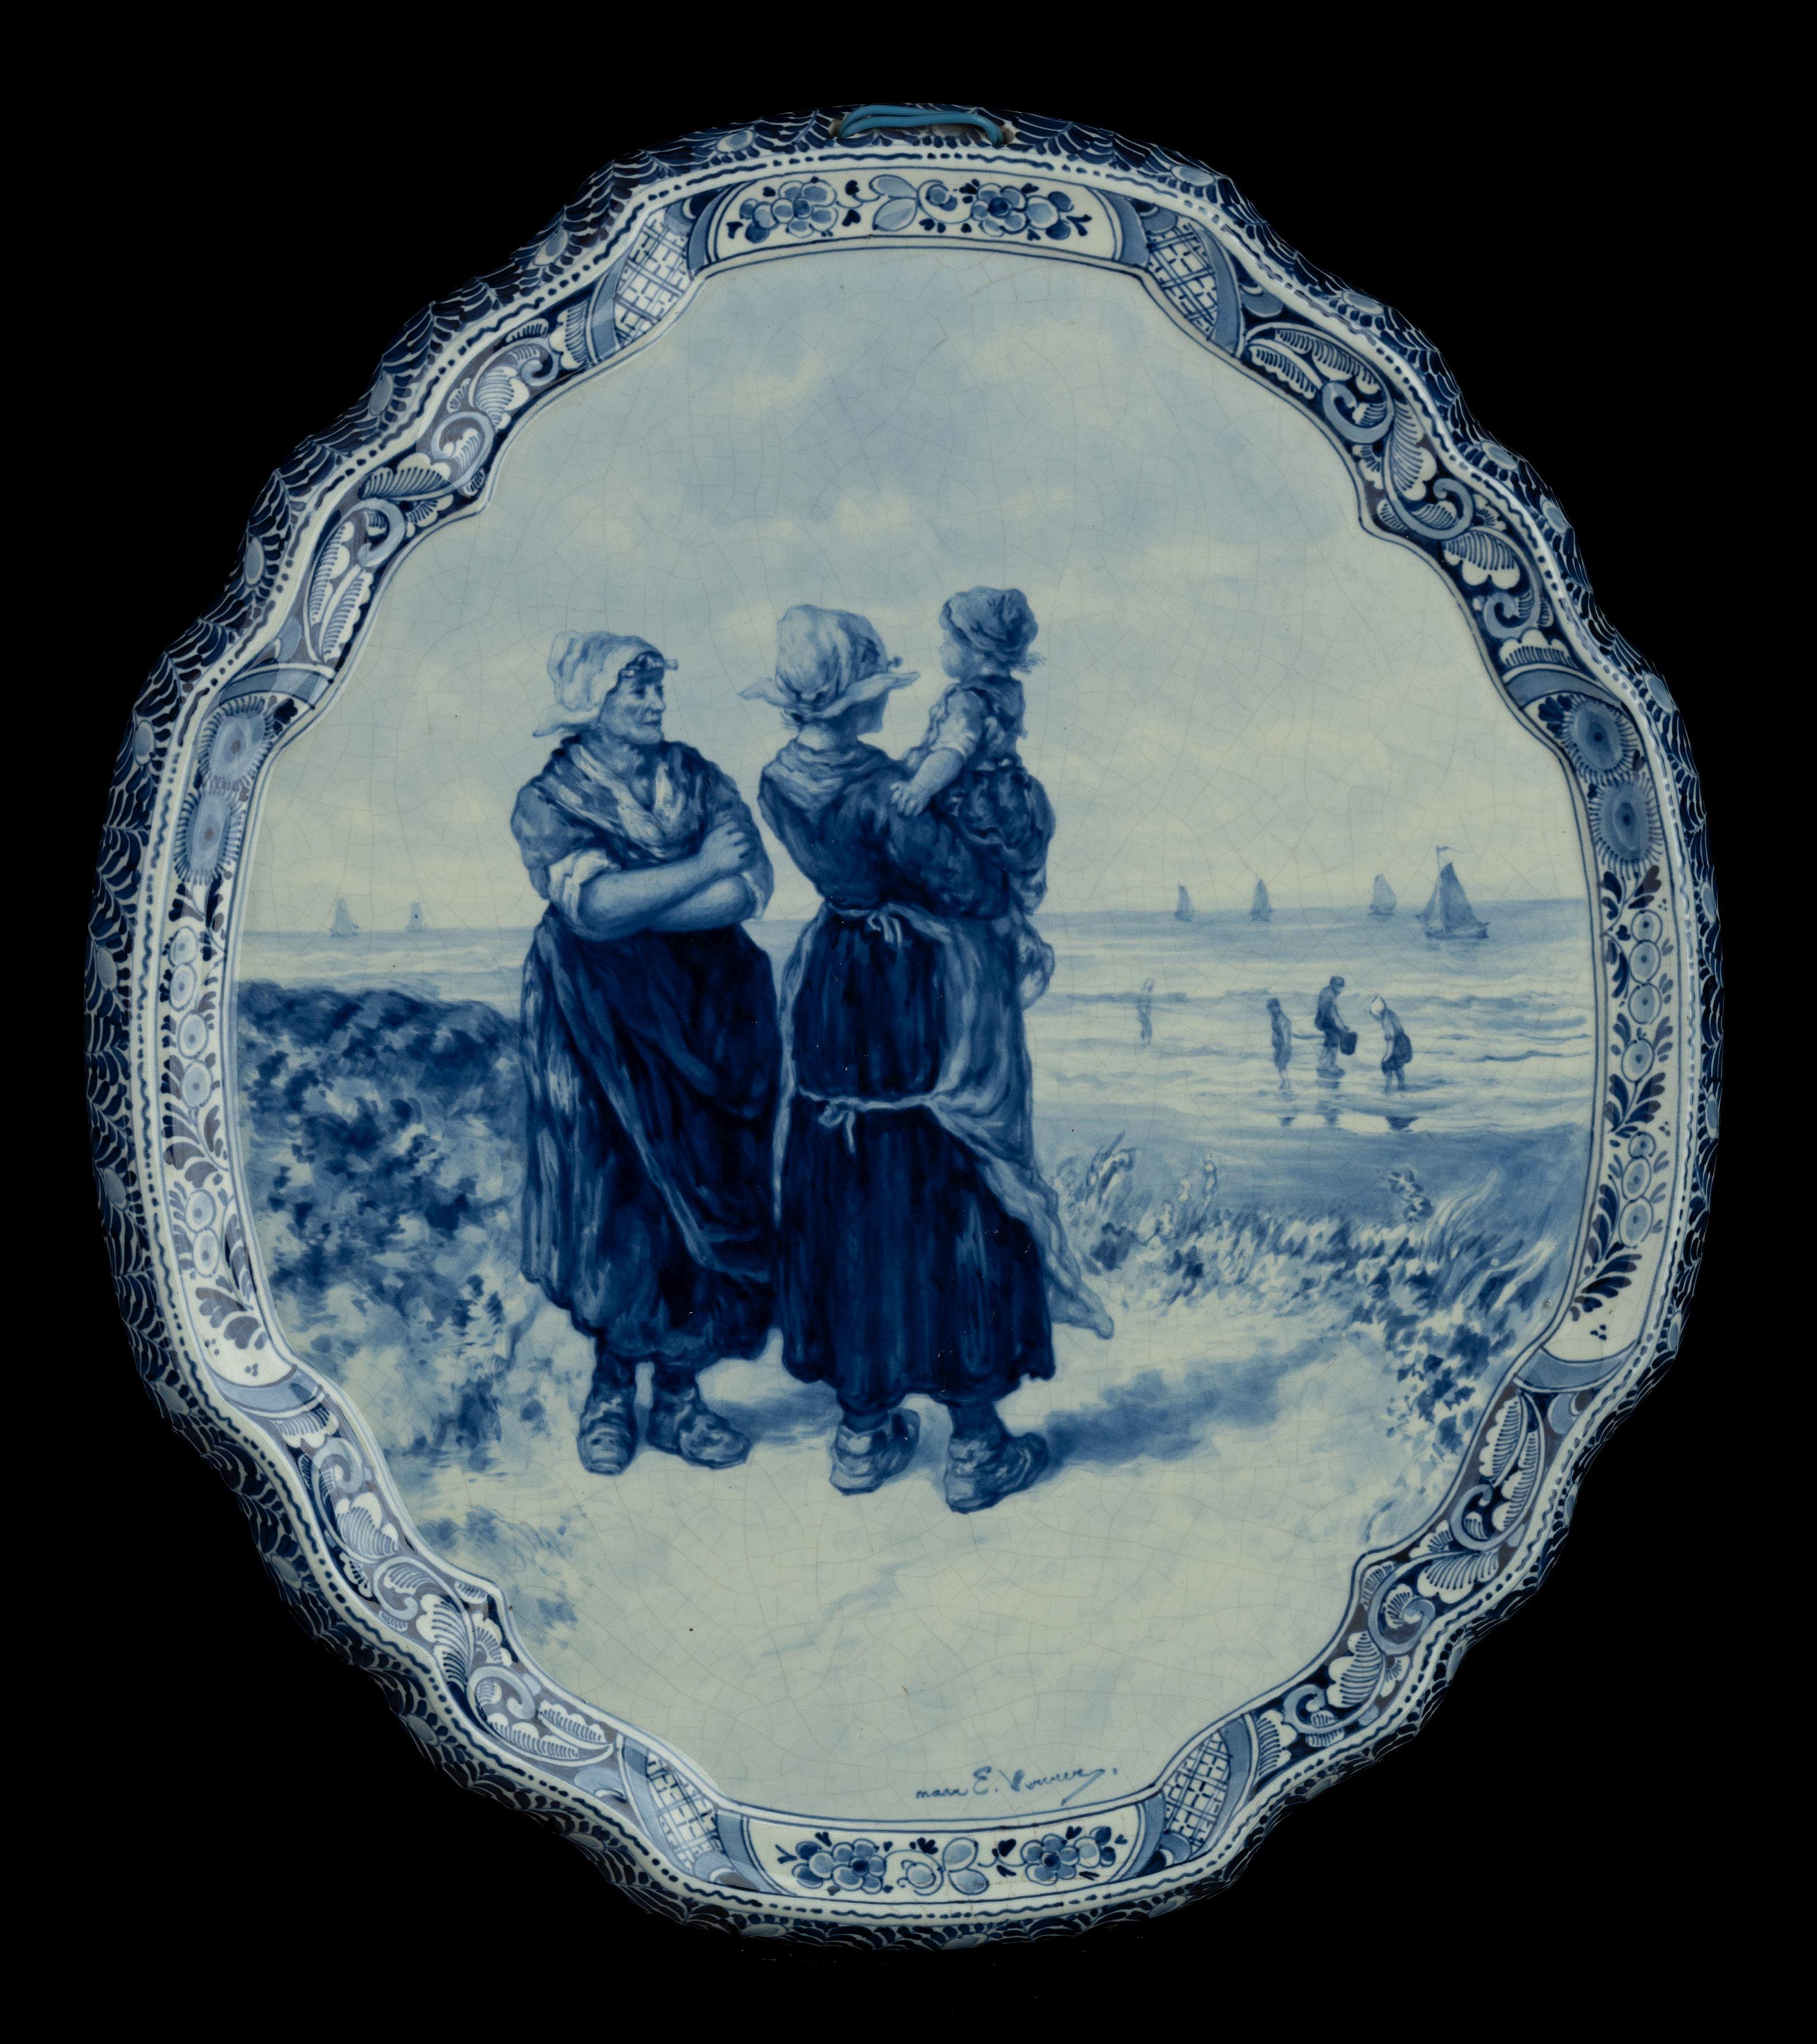 Delft, Porceleyne Fles Applique nach einem Gemälde von E. Verveer,  hergestellt 1901

Eine Porceleyne Fles Delft handgemalte Applikation nach einem Gemälde von Elchanon Leonardus Verveer. . Die Applikation ist in Delftblau gehalten und zeigt zwei